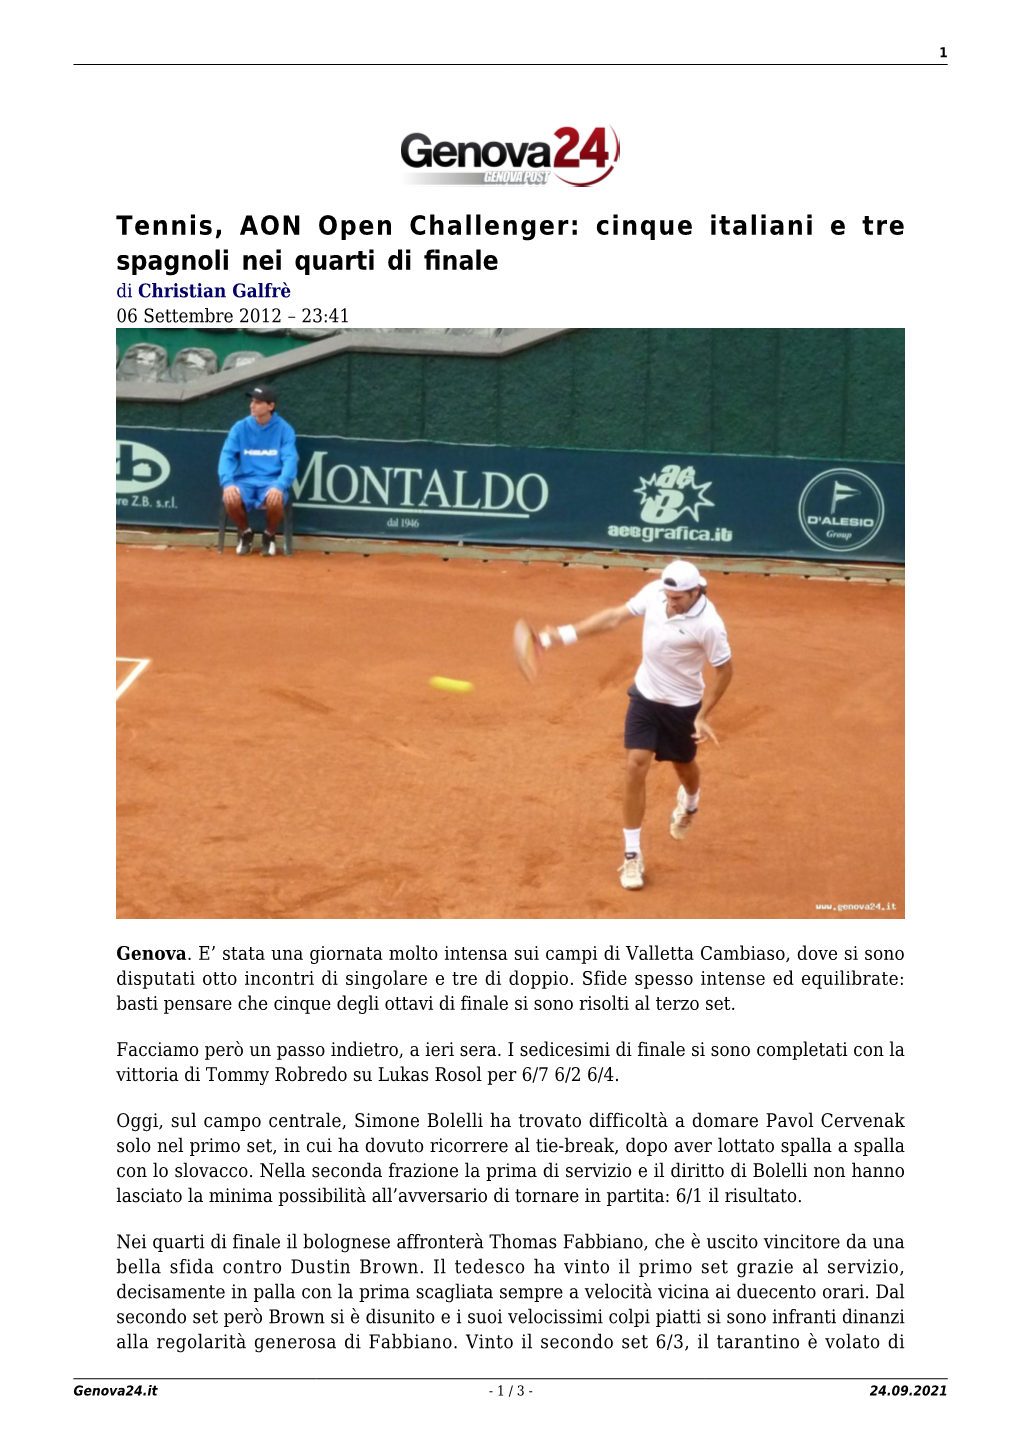 Tennis, AON Open Challenger: Cinque Italiani E Tre Spagnoli Nei Quarti Di ﬁnale Di Christian Galfrè 06 Settembre 2012 – 23:41